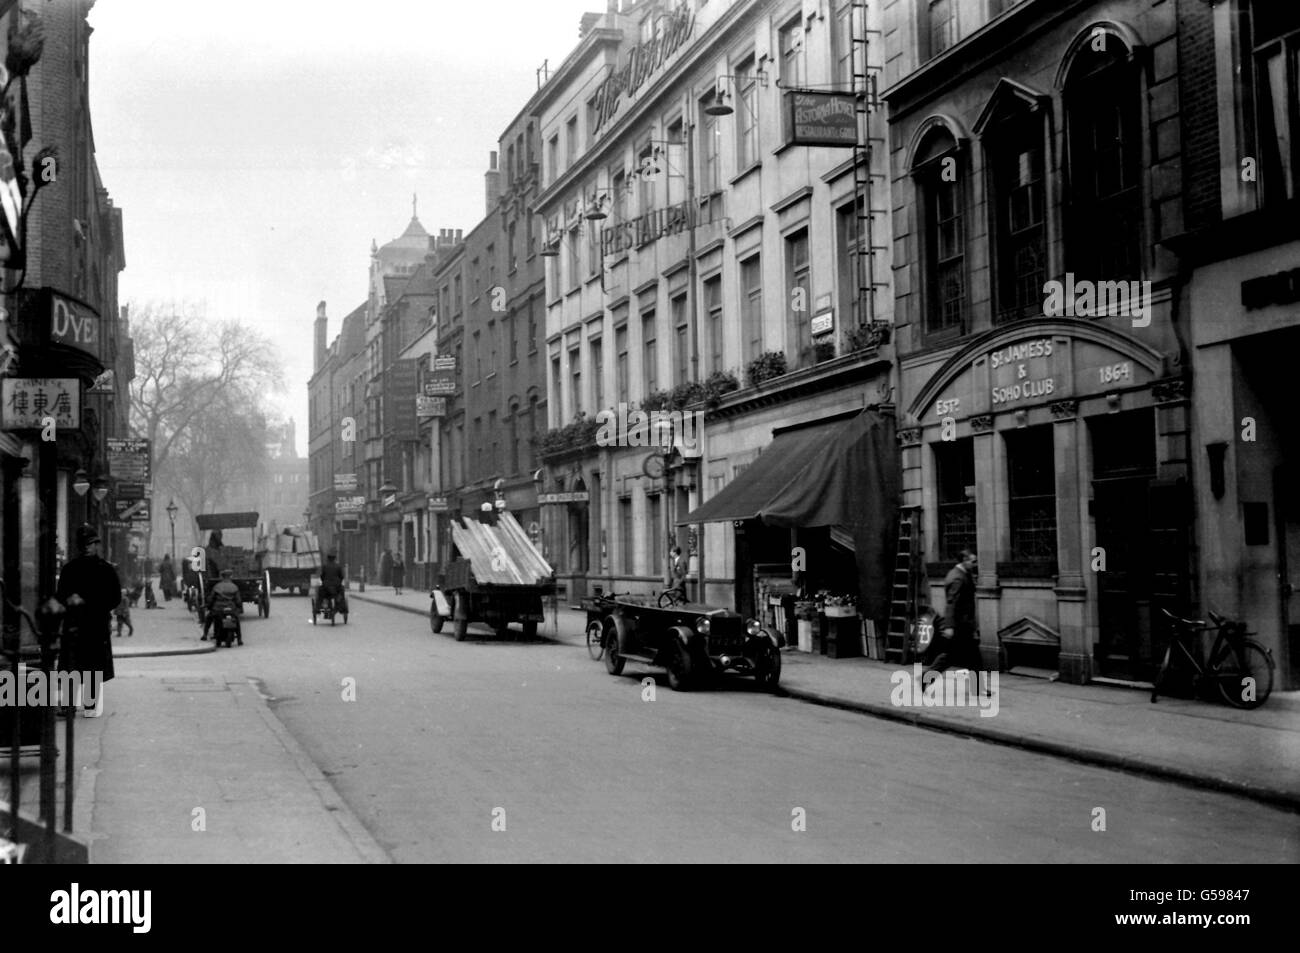 GREEK STREET, LONDON 1932: A view of Greek Street in the Soho area of London. Stock Photo